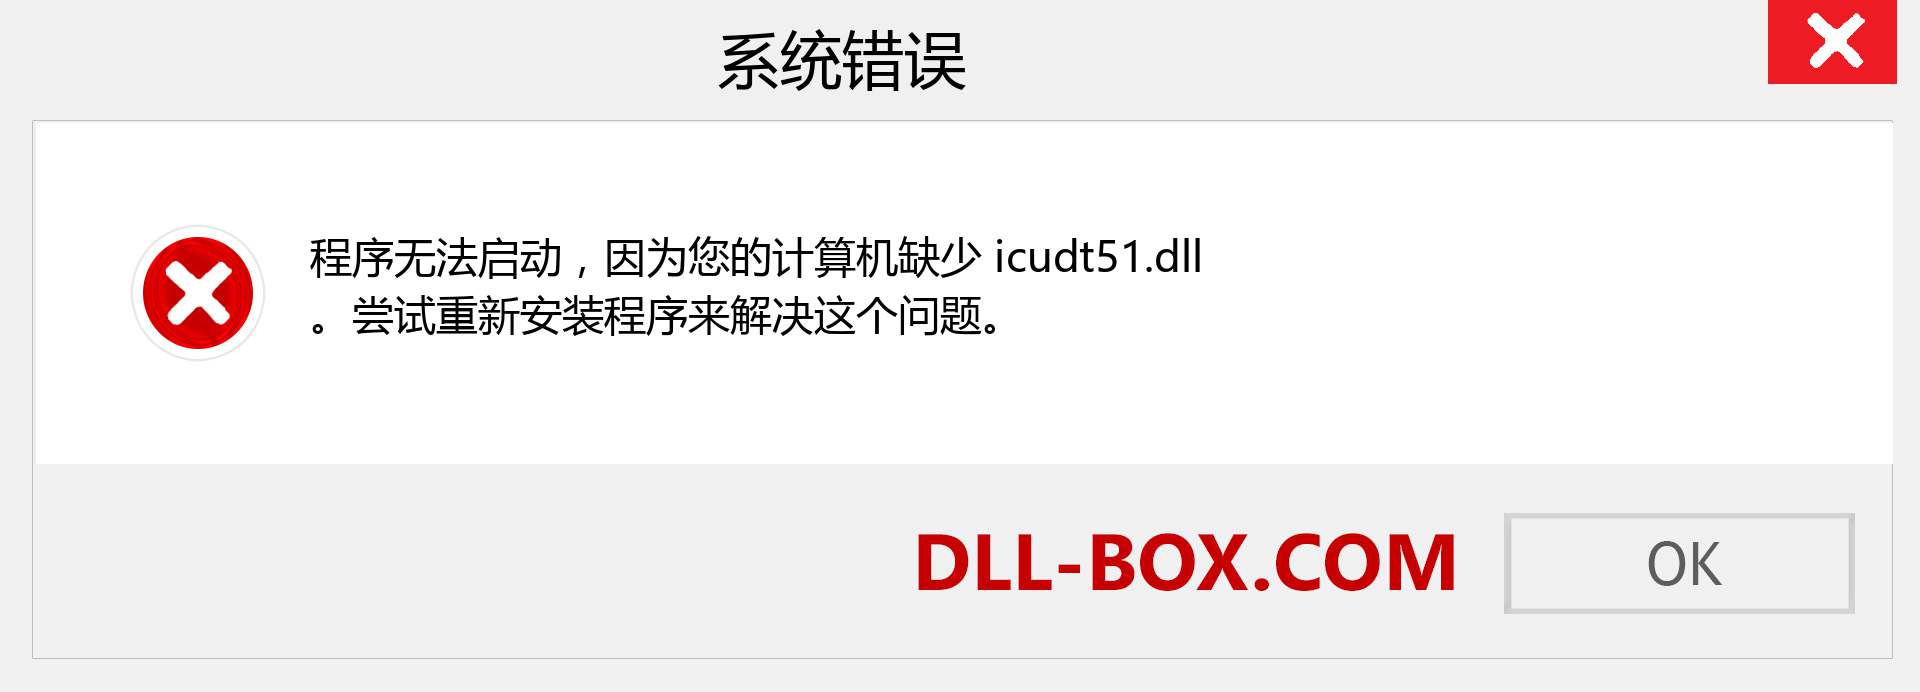 icudt51.dll 文件丢失？。 适用于 Windows 7、8、10 的下载 - 修复 Windows、照片、图像上的 icudt51 dll 丢失错误